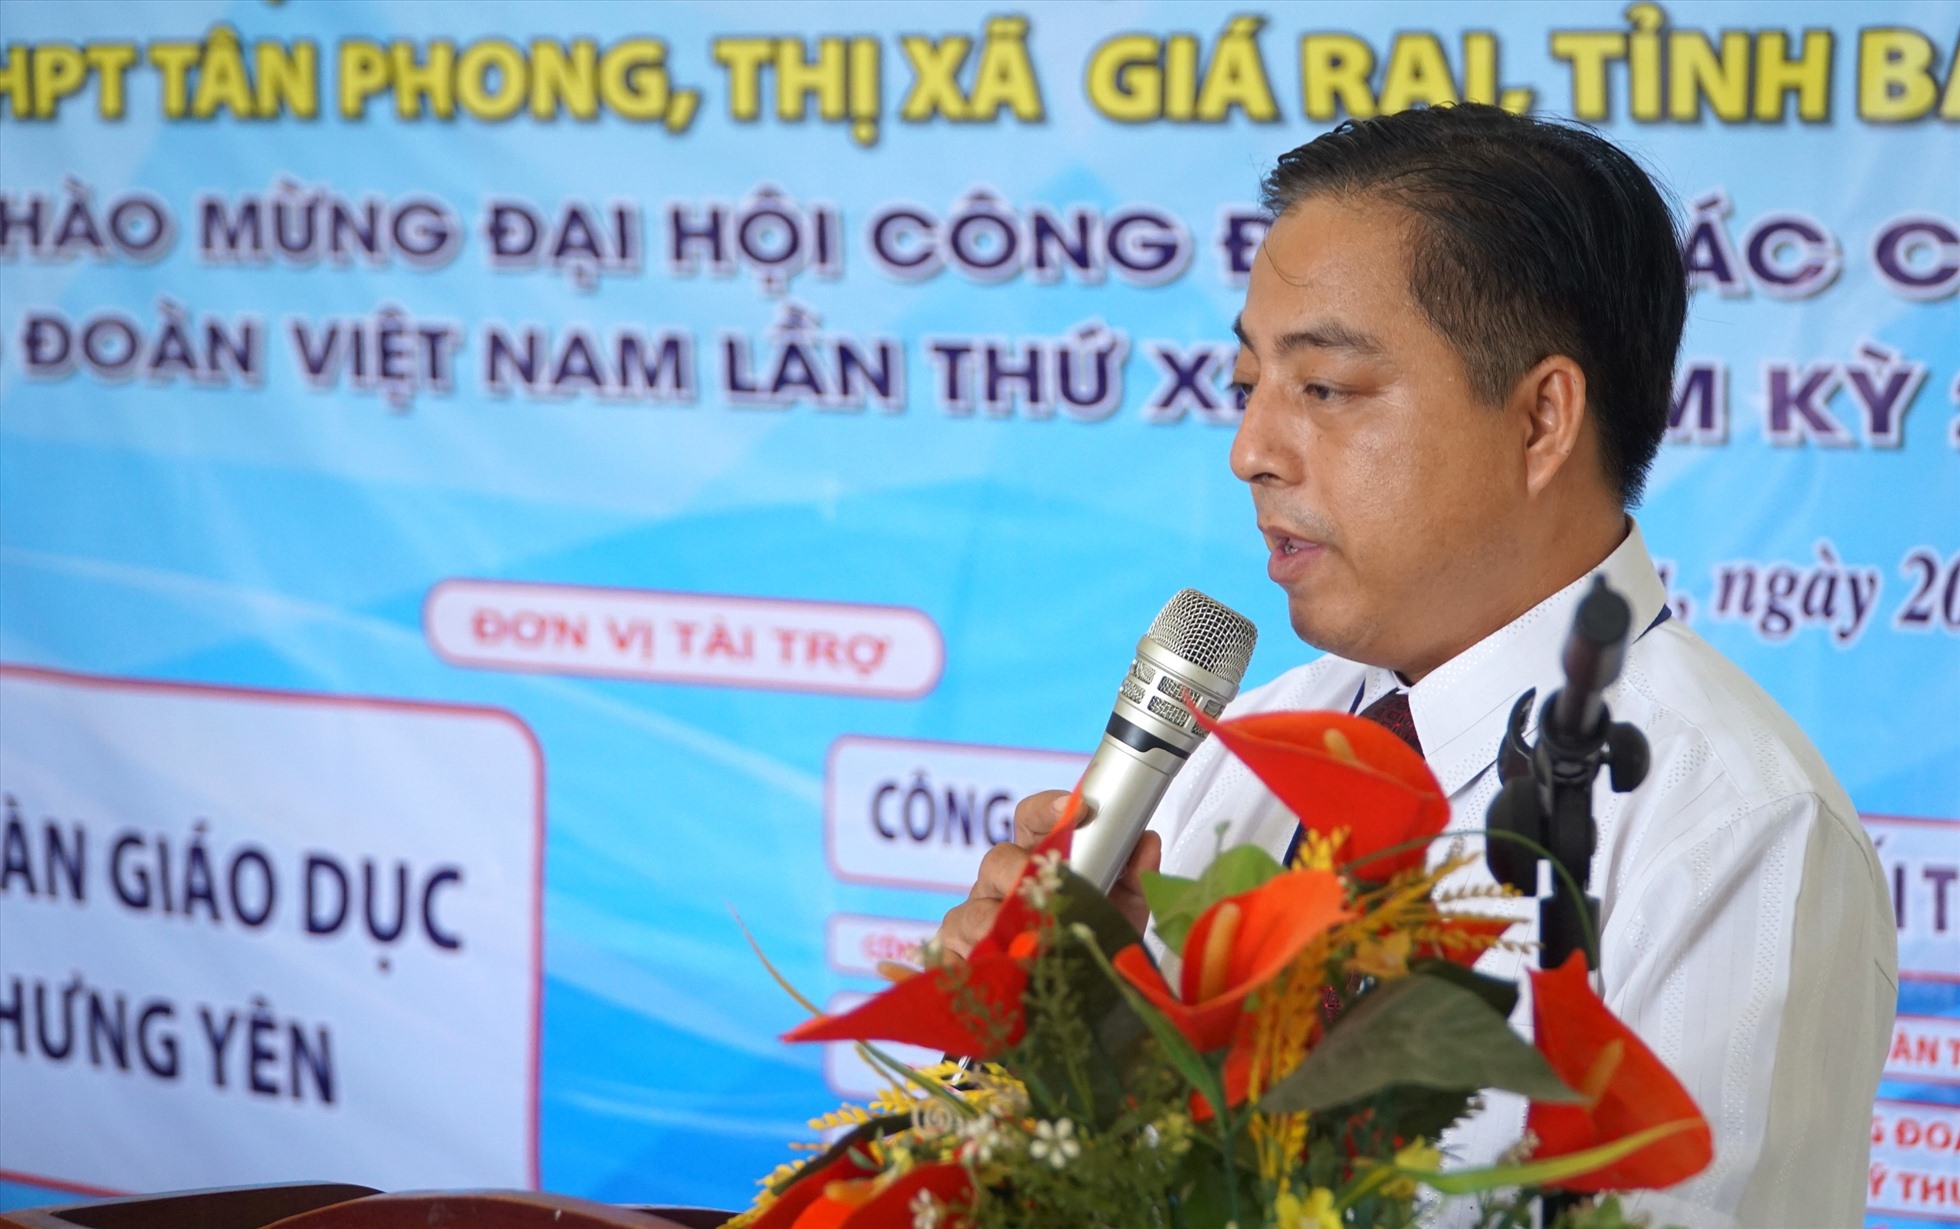 Thầy Nguyễn Hoàng Diệu, Phó hiệu trưởng Trường THPT Tân Phong vui mừng khi nhà công vụ cho giáo viên được khởi công xây dựng. Ảnh: Nhật Hồ